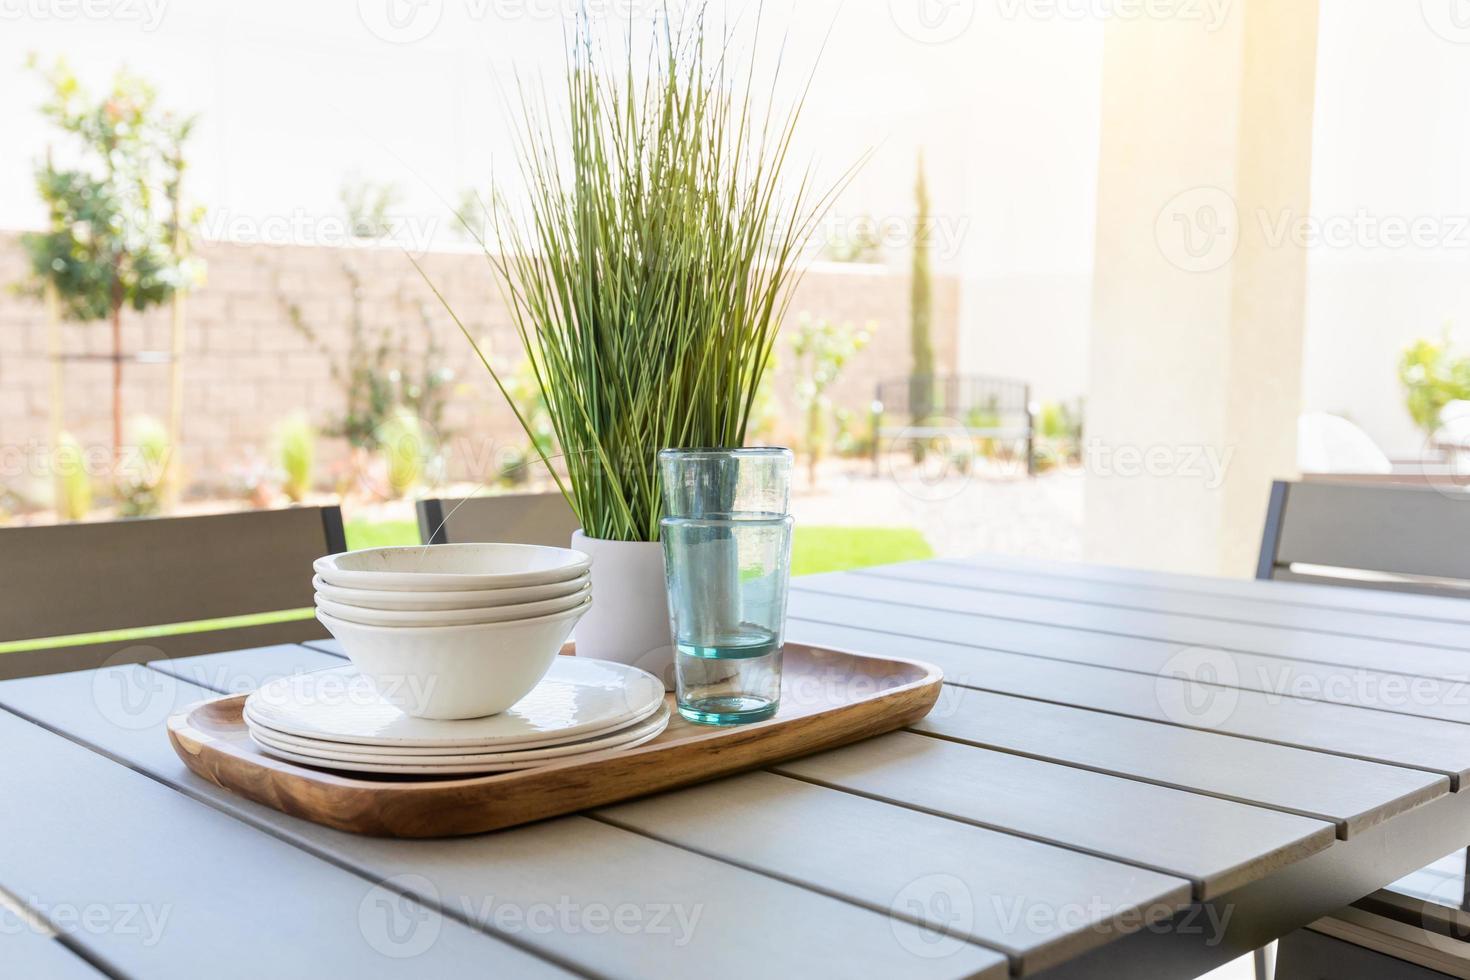 patio al aire libre con platos y vasos en la bandeja foto